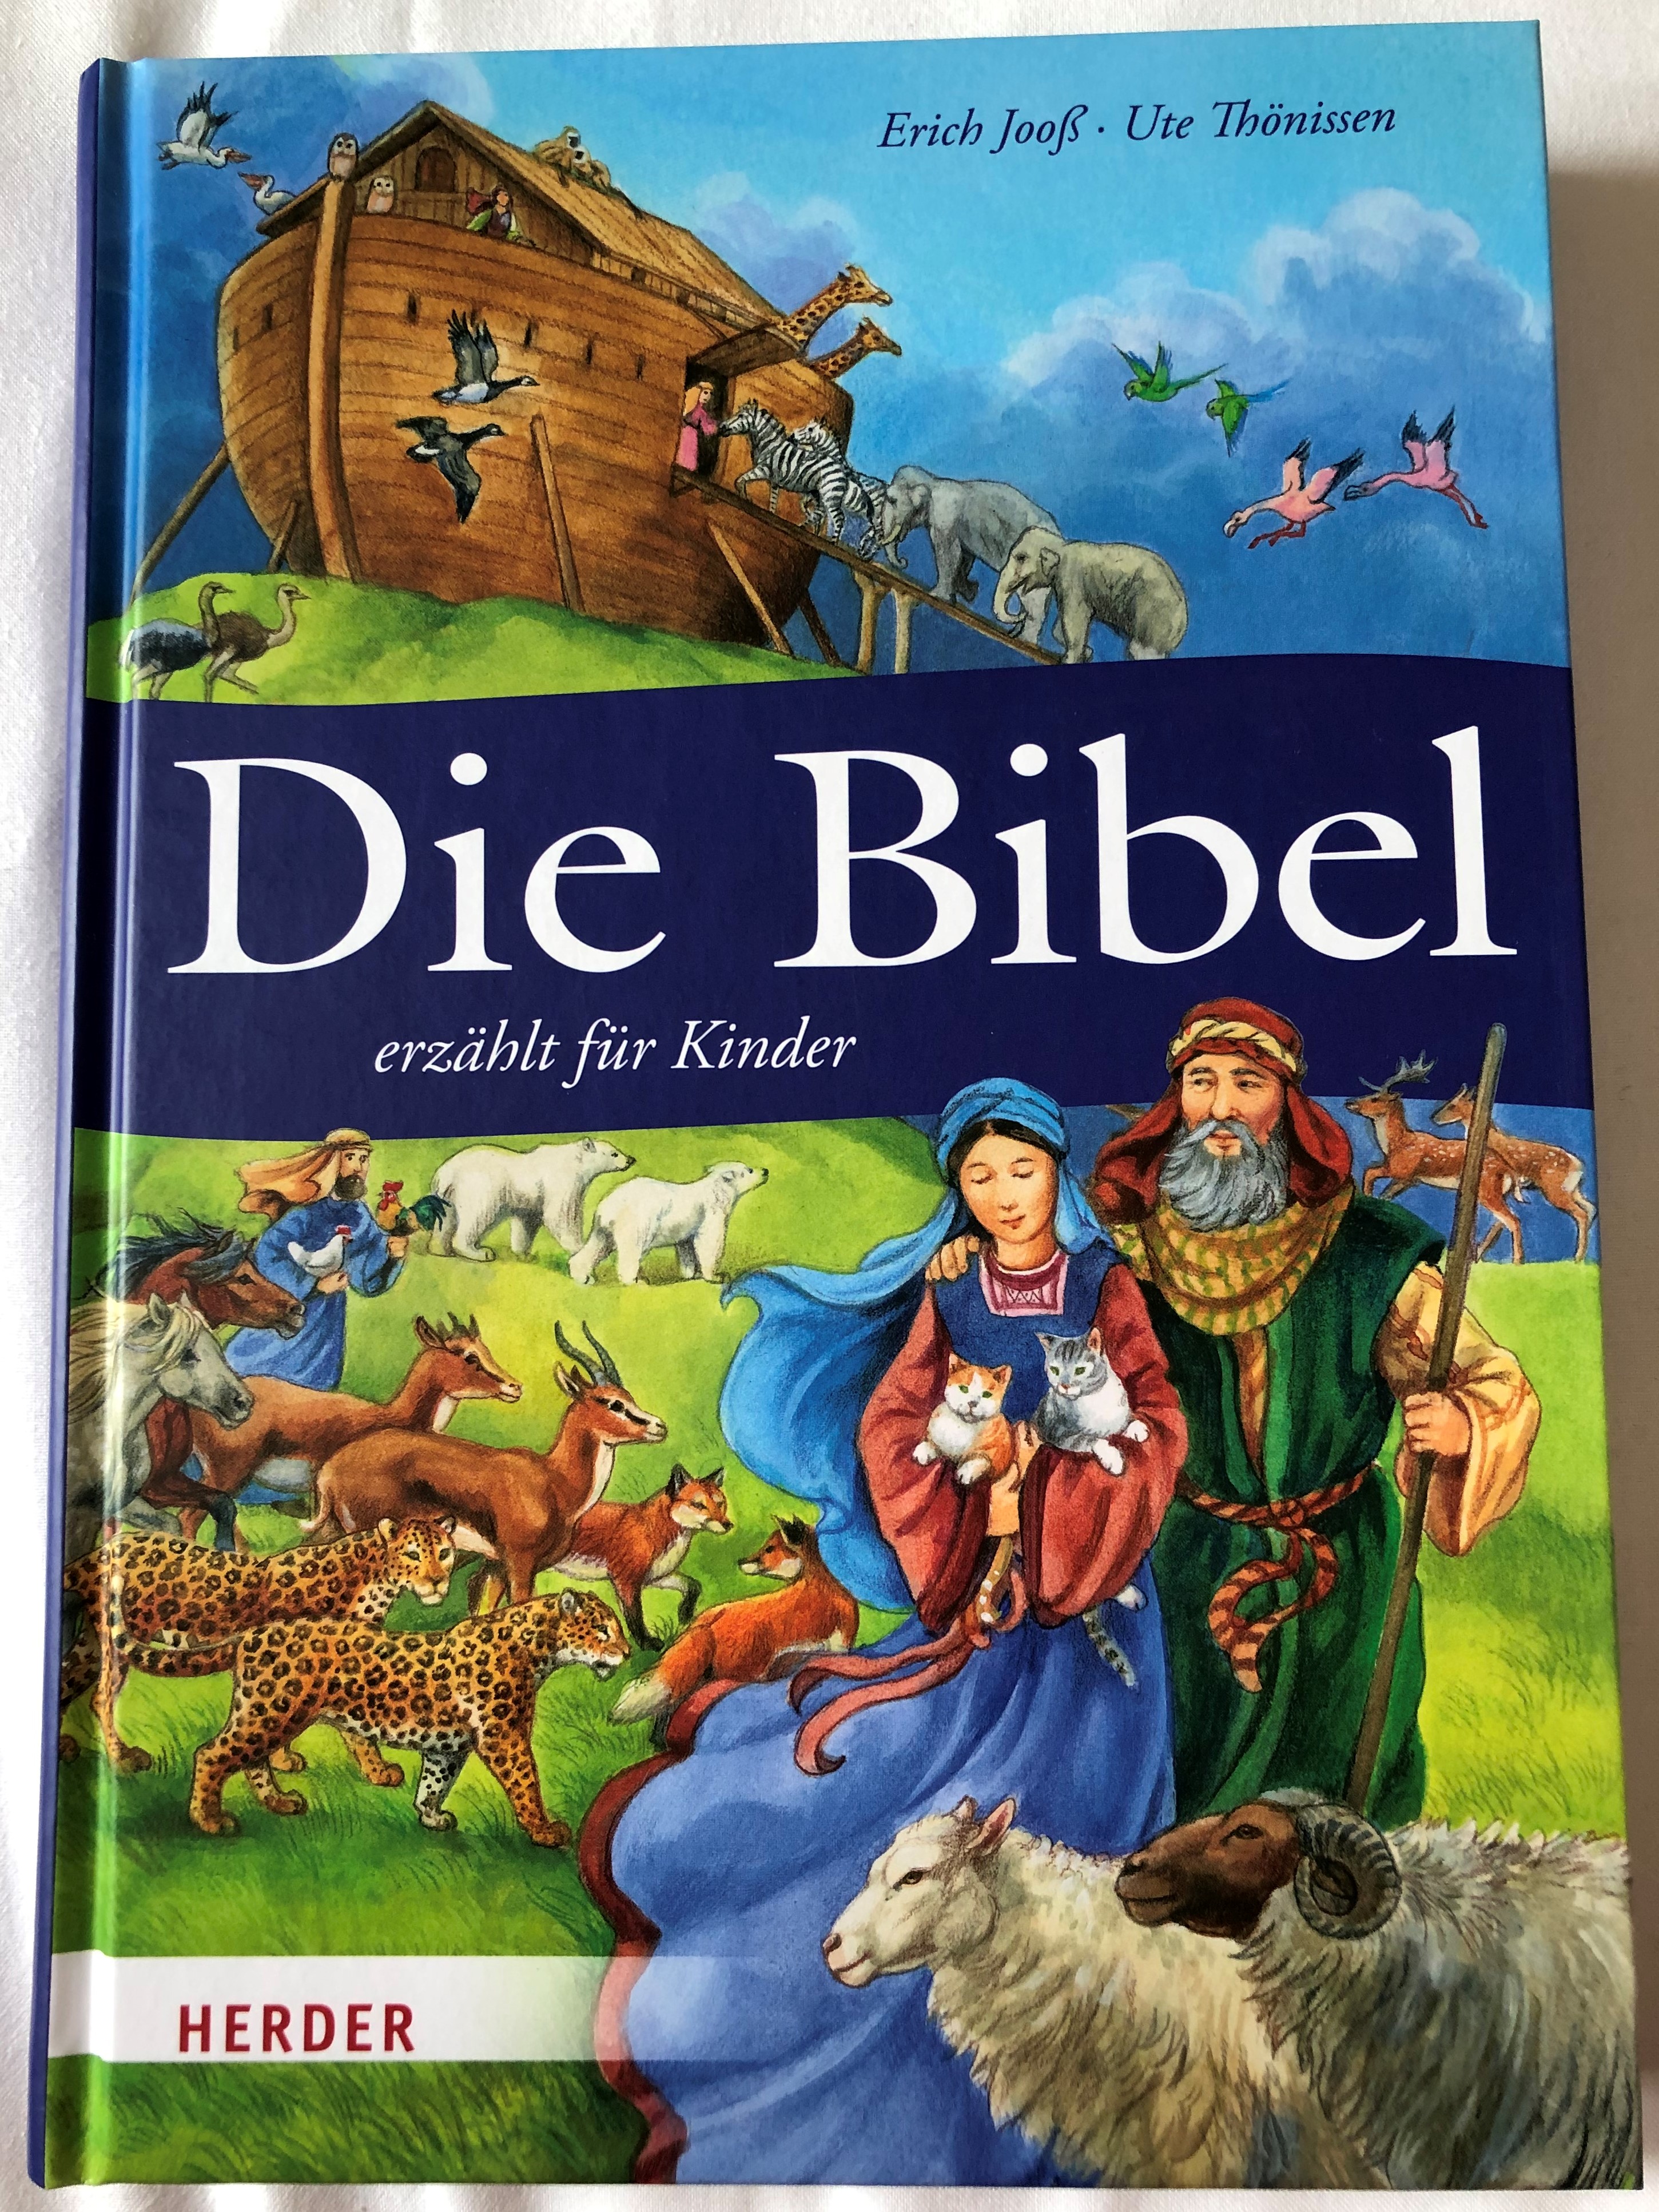 die-bibel-erz-hlt-f-r-kinder-by-erich-joo-ute-th-nissen-the-bible-retold-for-children-in-german-language-color-illustrations-hardcover-2013-herder-1-.jpg